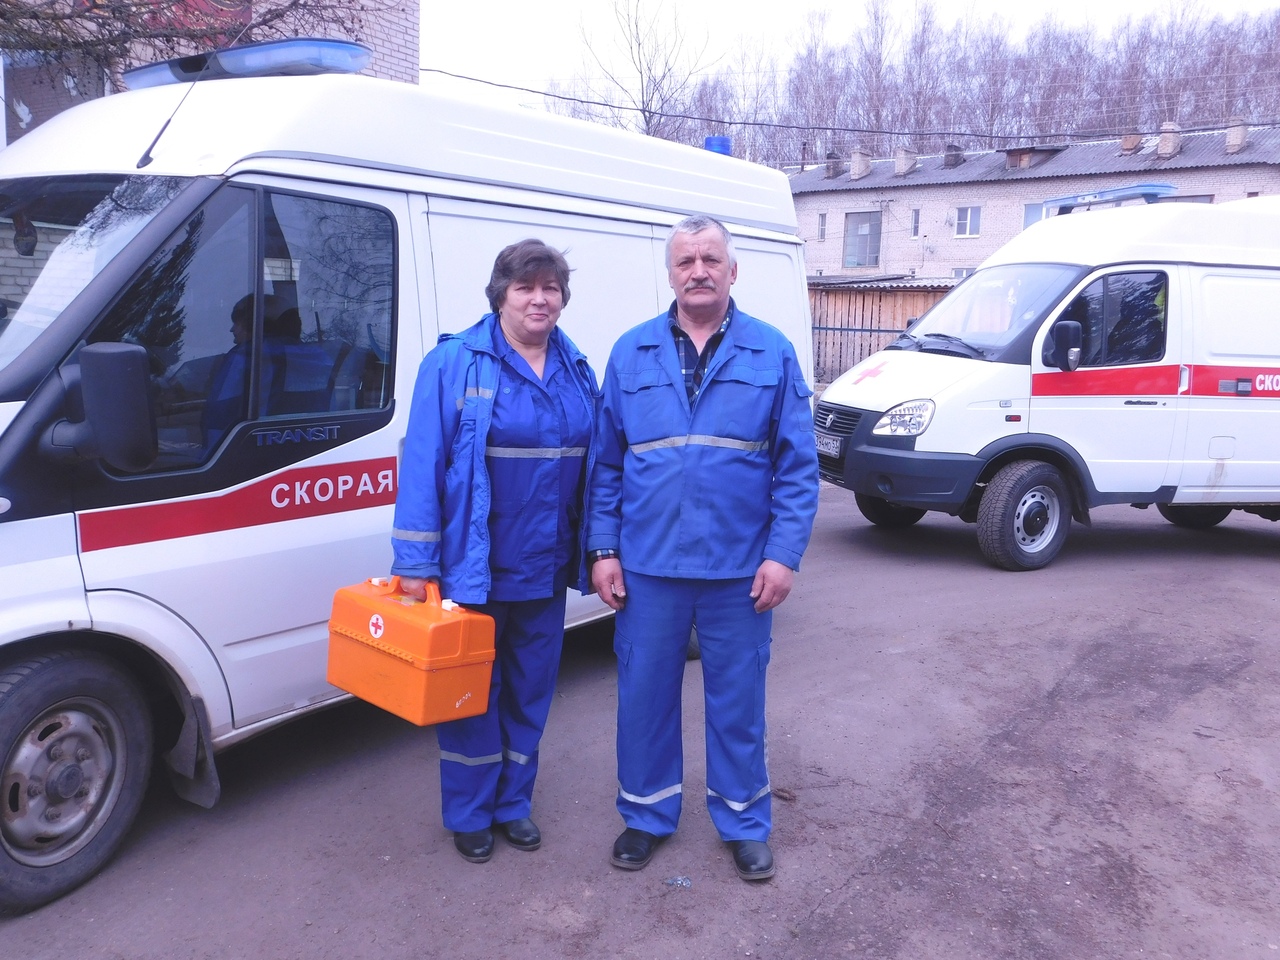 7 апреля служба скорой помощи Поддорской ЦРБ Новгородской области отметила полувековой юбилей